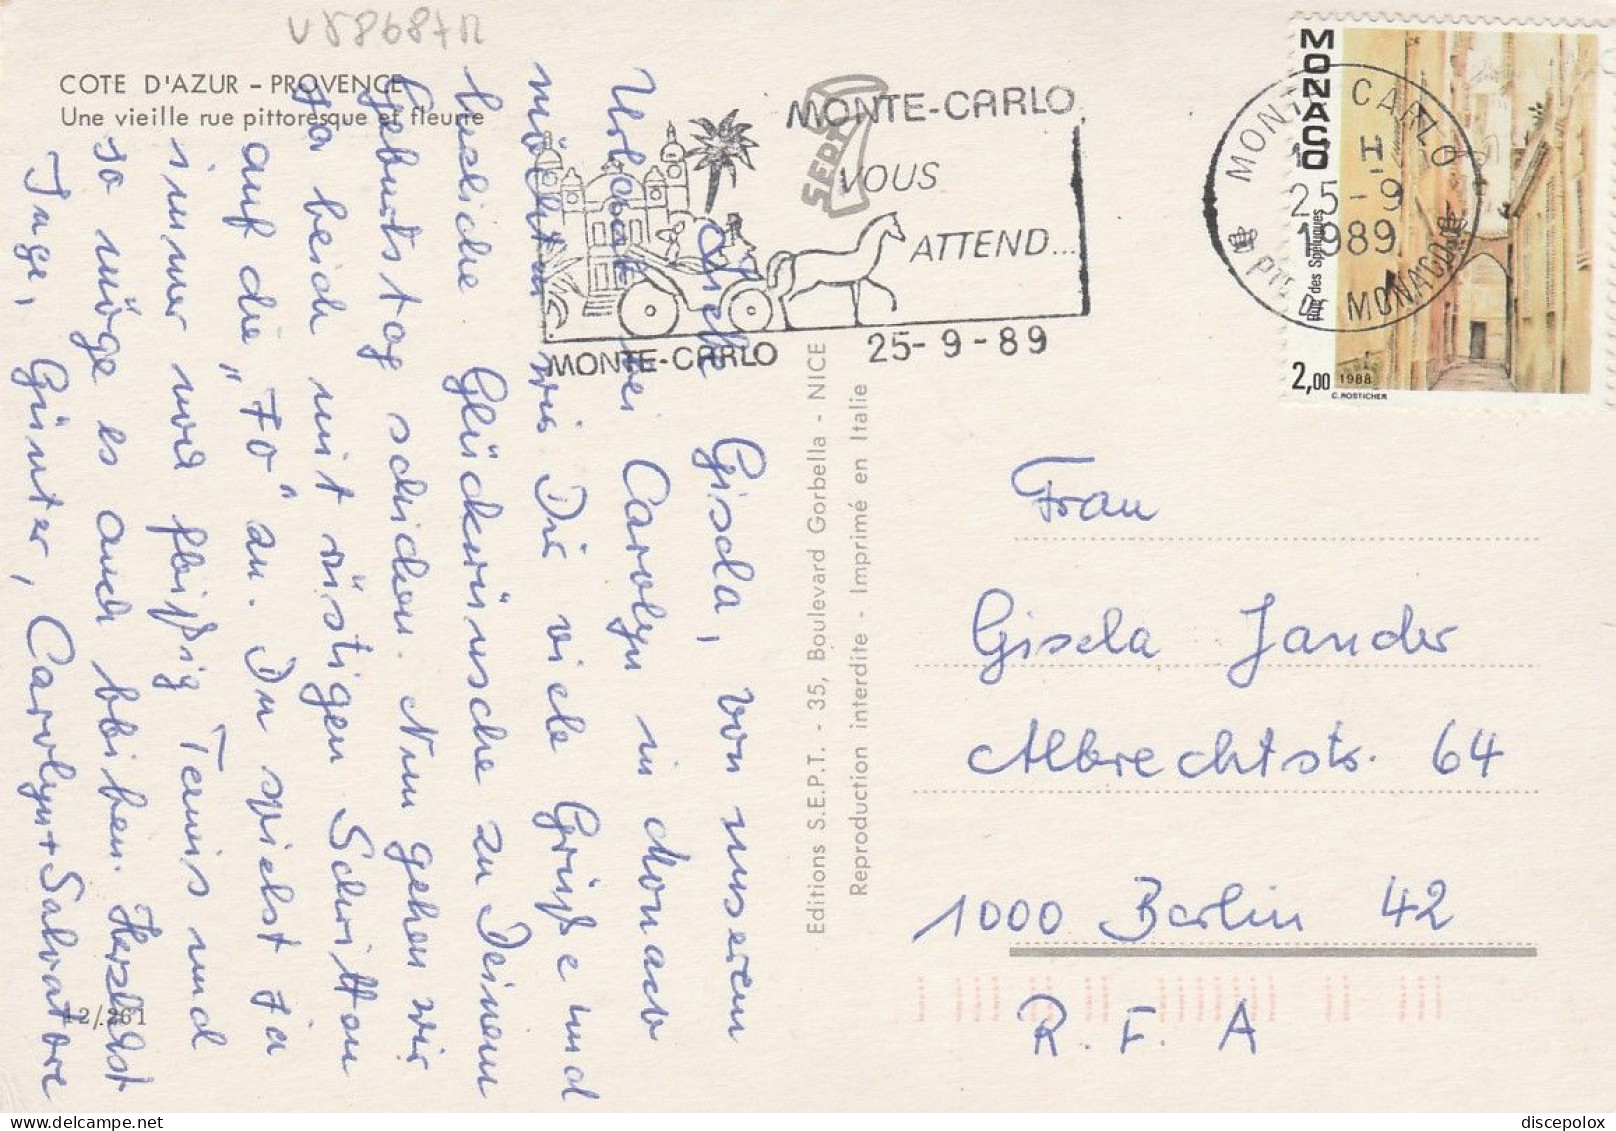 U5868 Monaco - 2 Francs Rue Des Spelugues - Nice Stamps Timbres Francobolli / Viaggiata 1989 - Cartas & Documentos